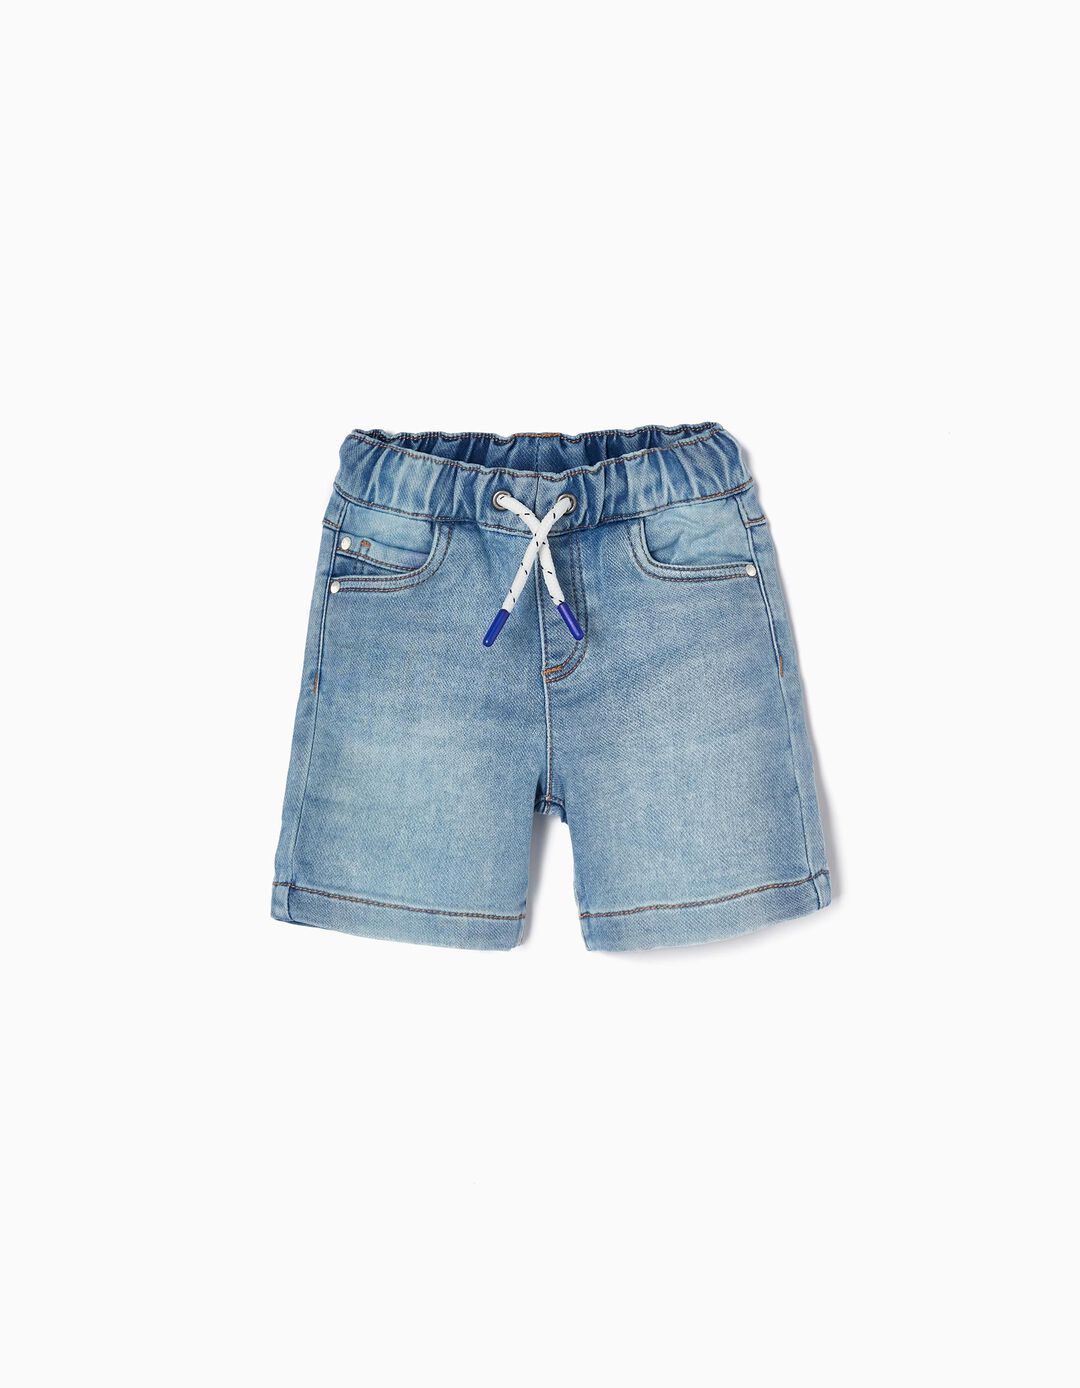 Denim Shorts for Baby Boys, Light Blue